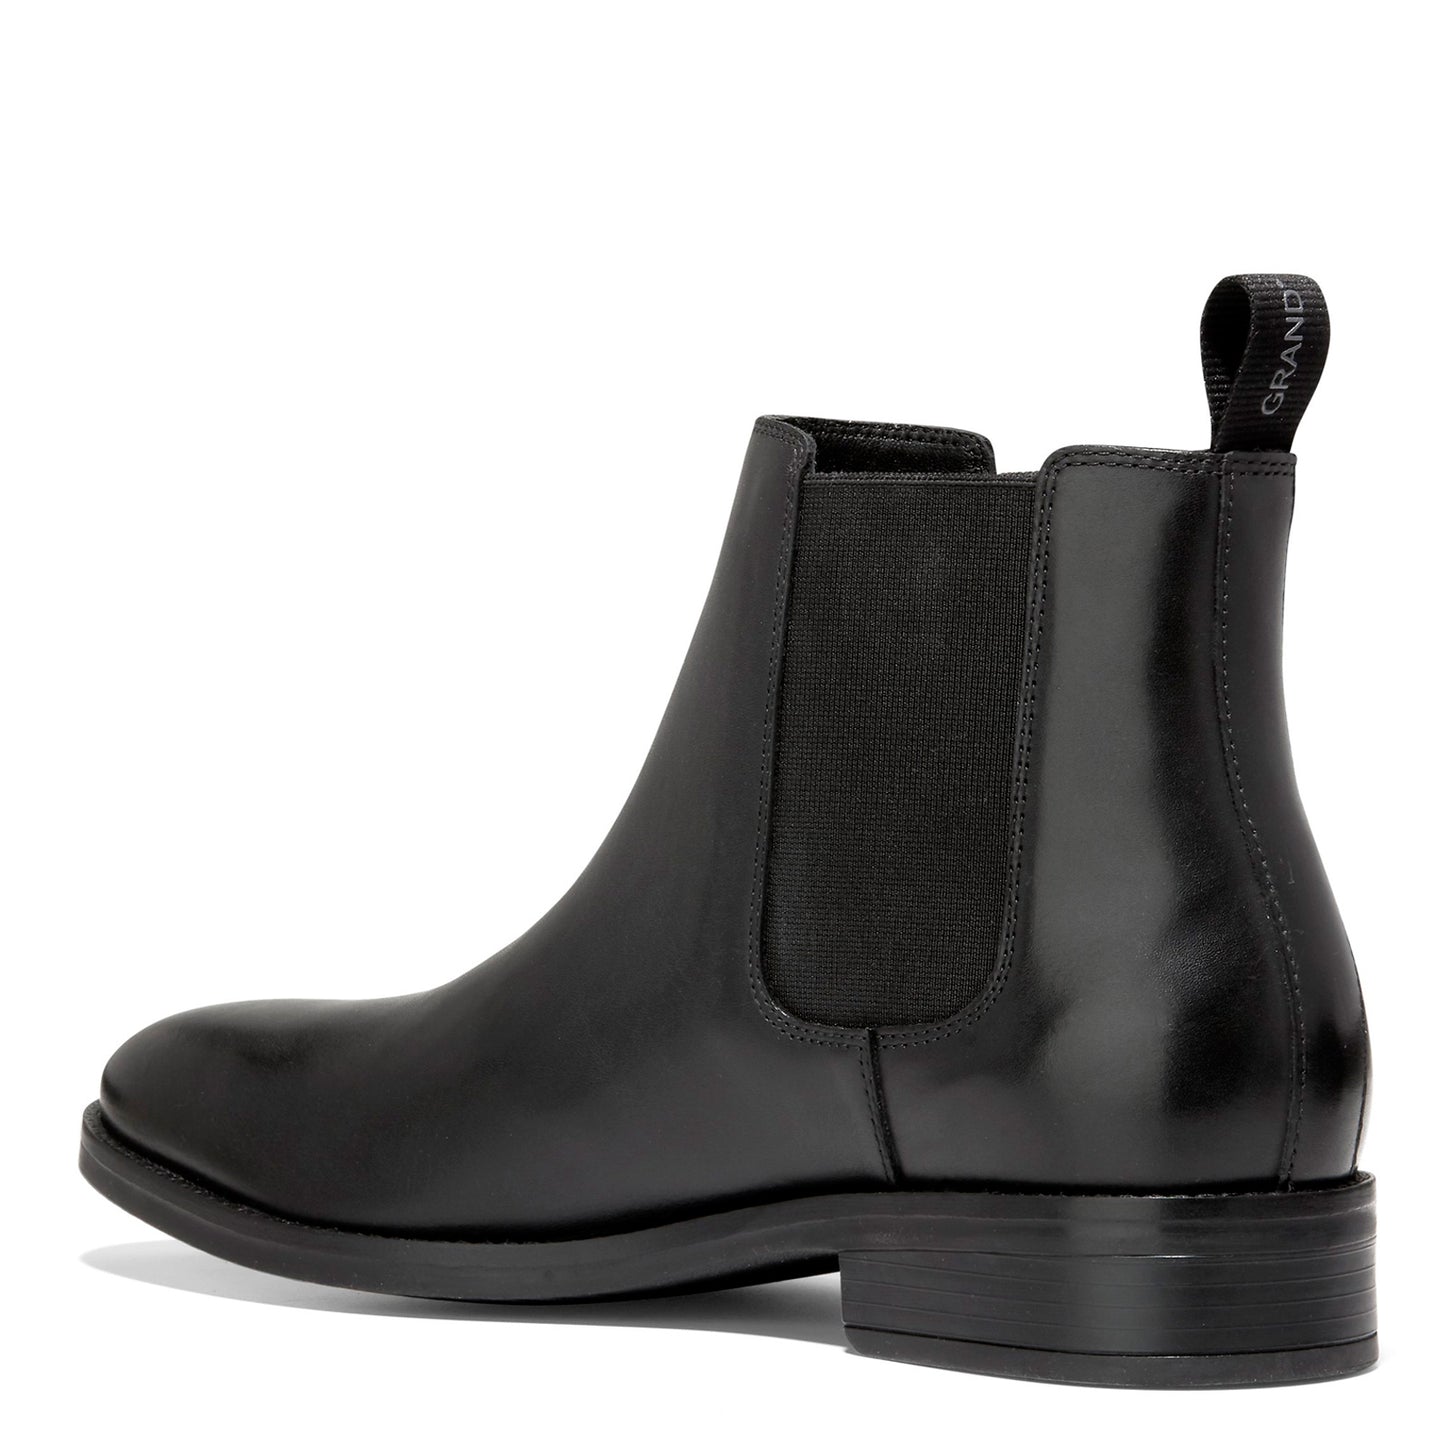 Peltz Shoes  Men's Cole Haan Grand+ Dress Chelsea Boot Black C37858